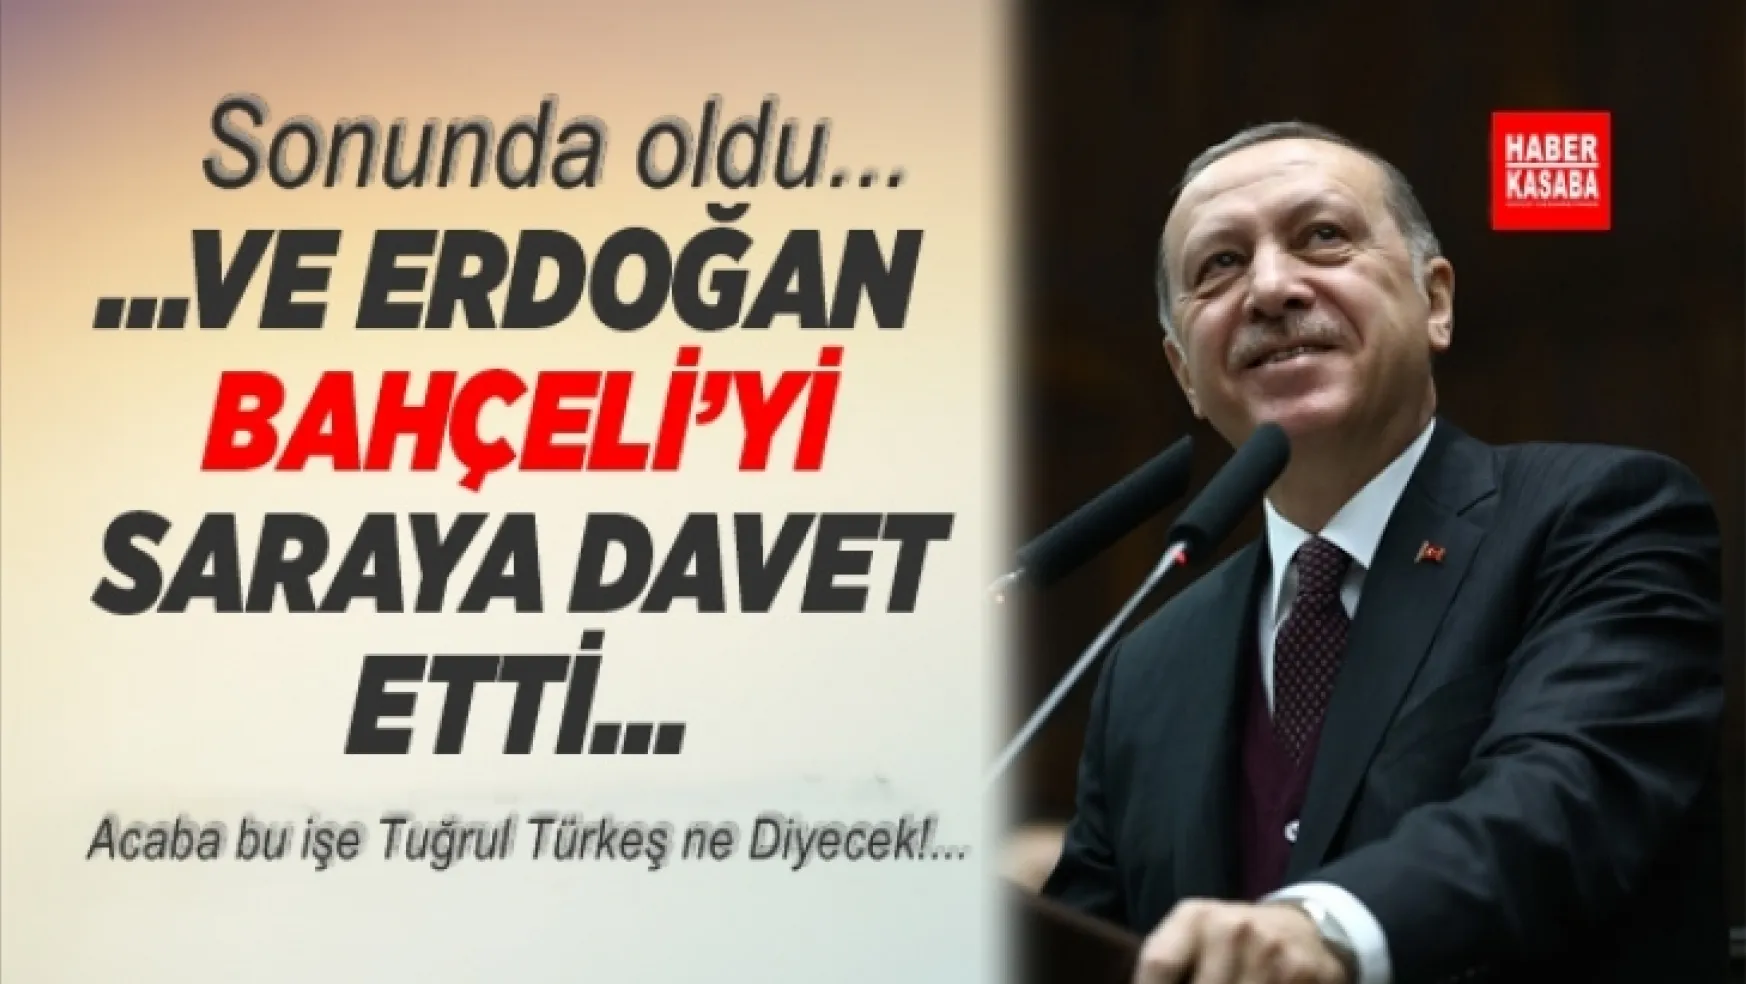 Sondakika!... Erdoğan, Bahçeli'yi Saray'a davet etti